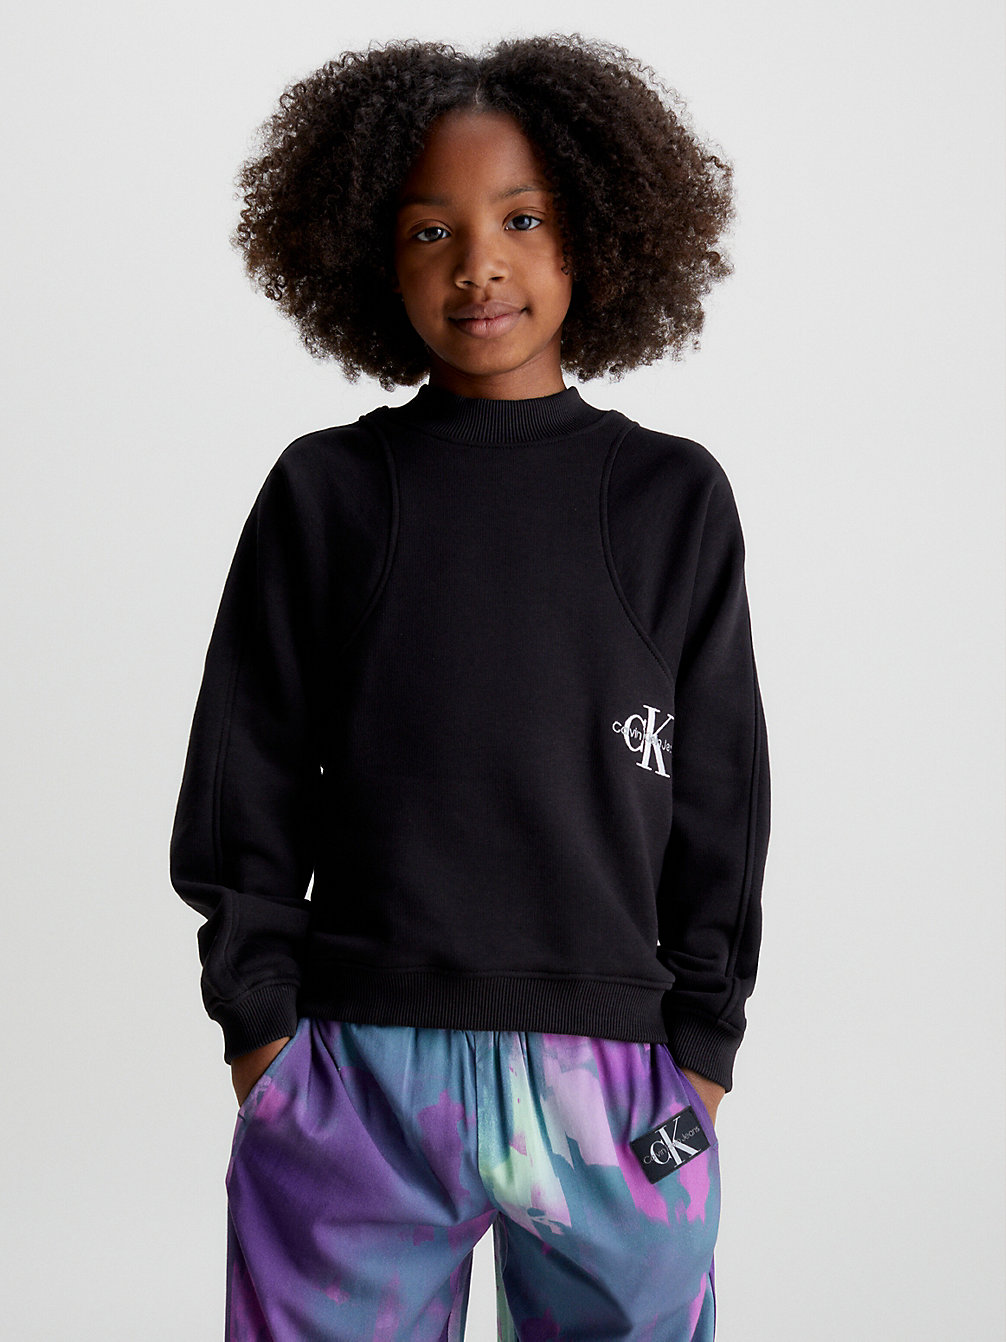 CK BLACK Logo-Sweatshirt Aus Baumwolle undefined Maedchen Calvin Klein